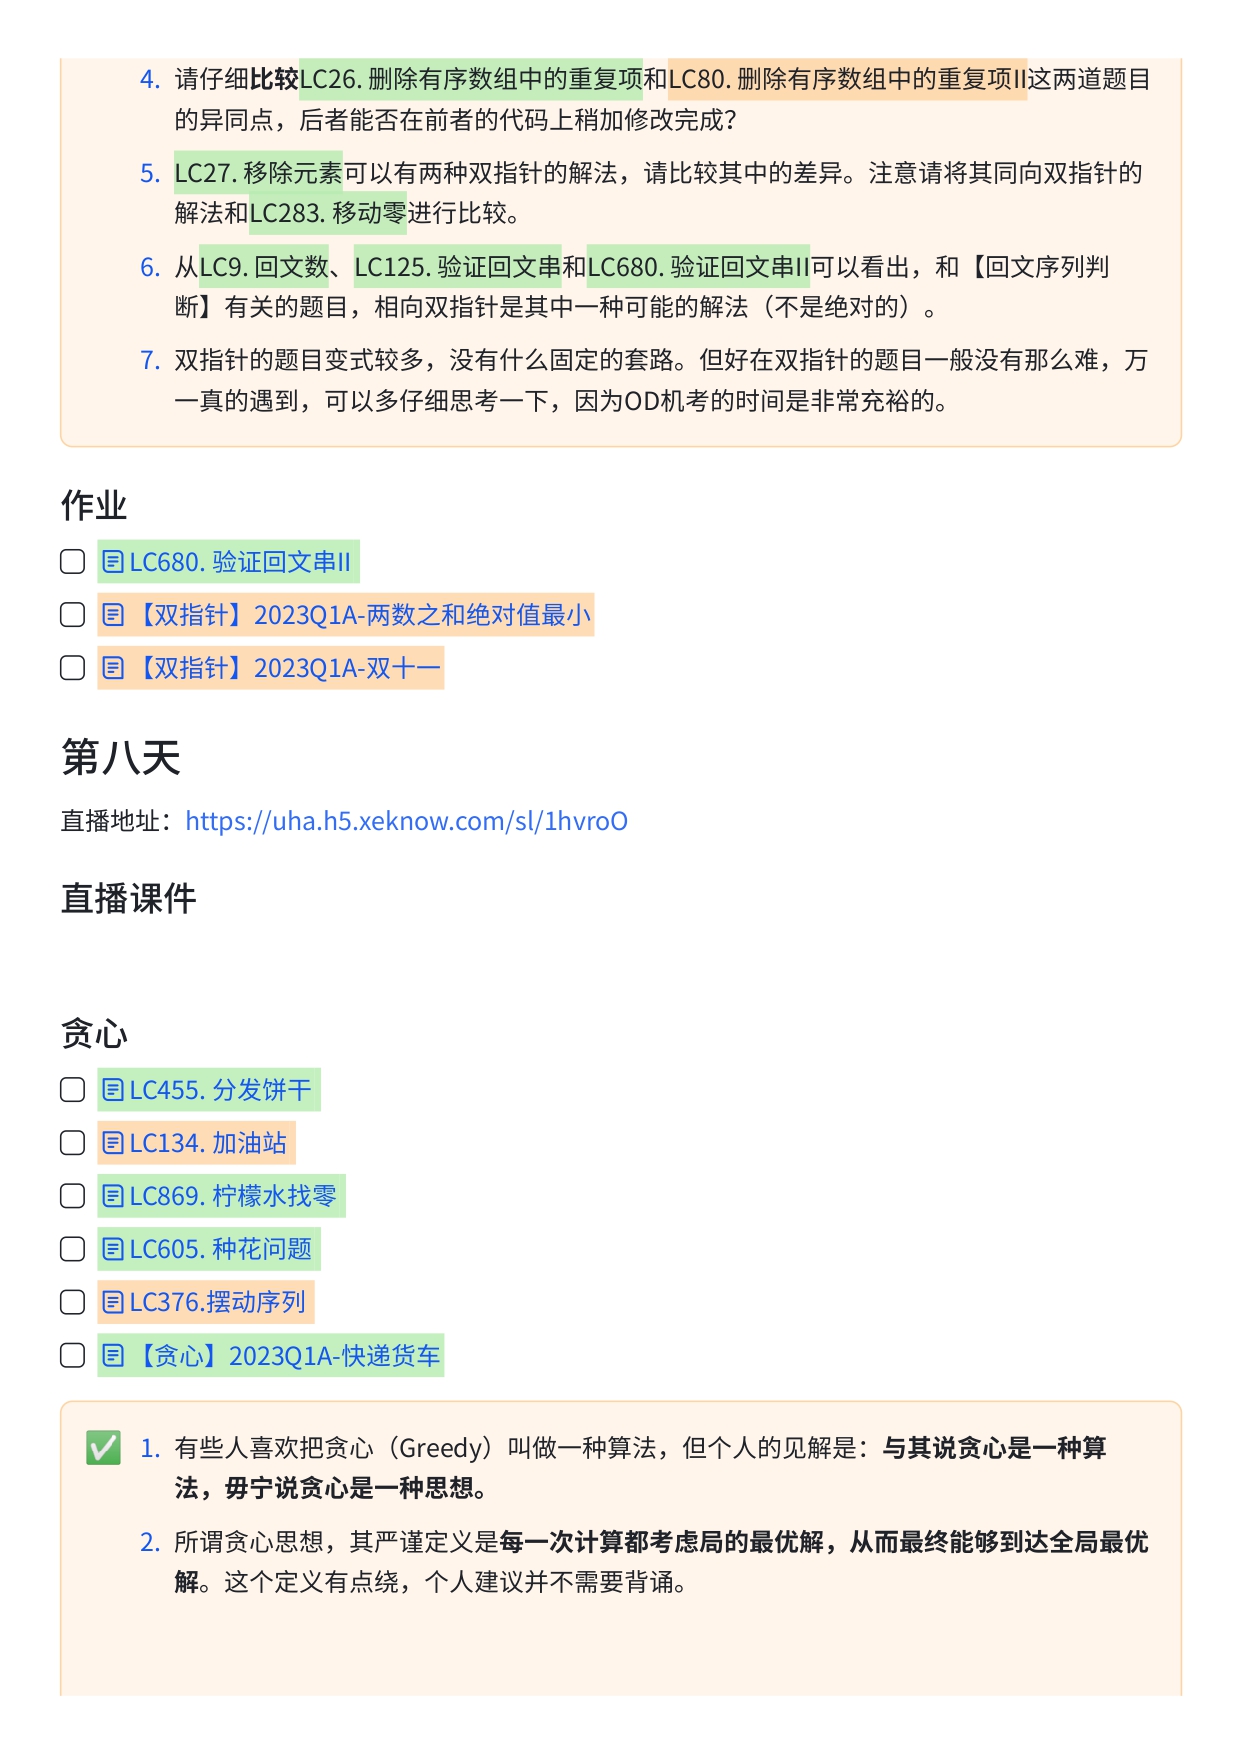 华为OD精品小班培训课程安排【一期】 (1)_page-0009